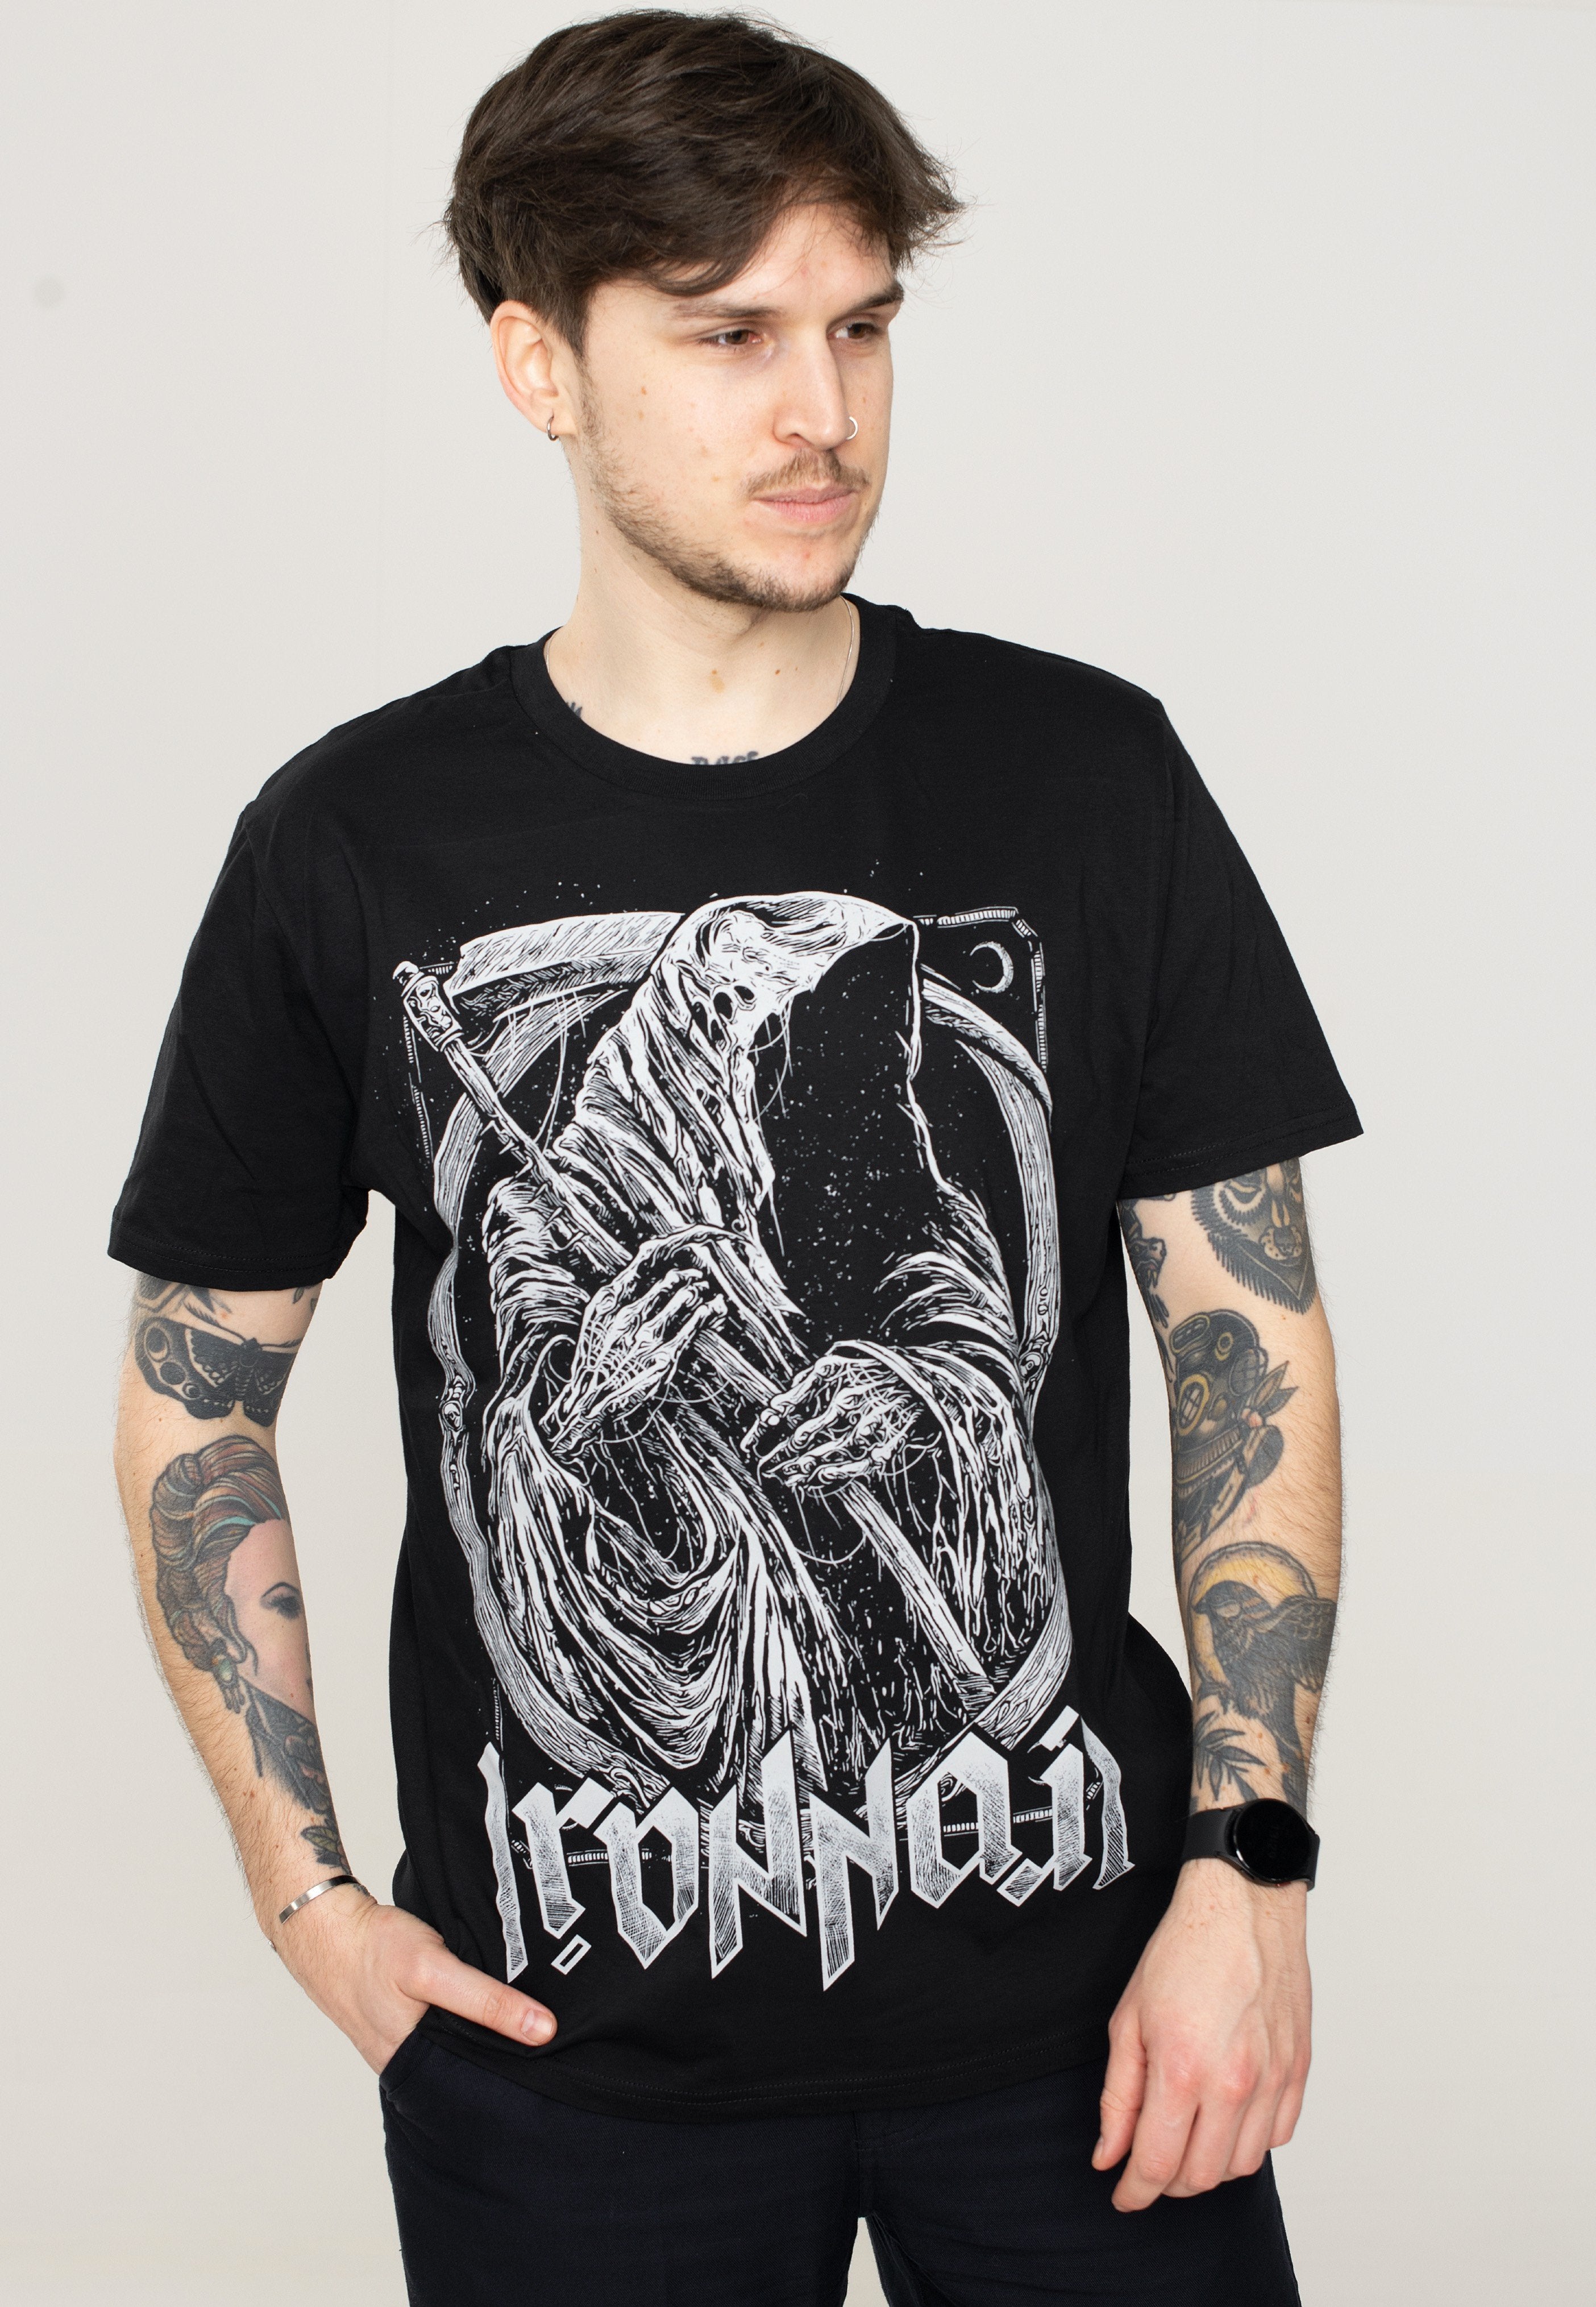 Ironnail - Thouless - T-Shirt